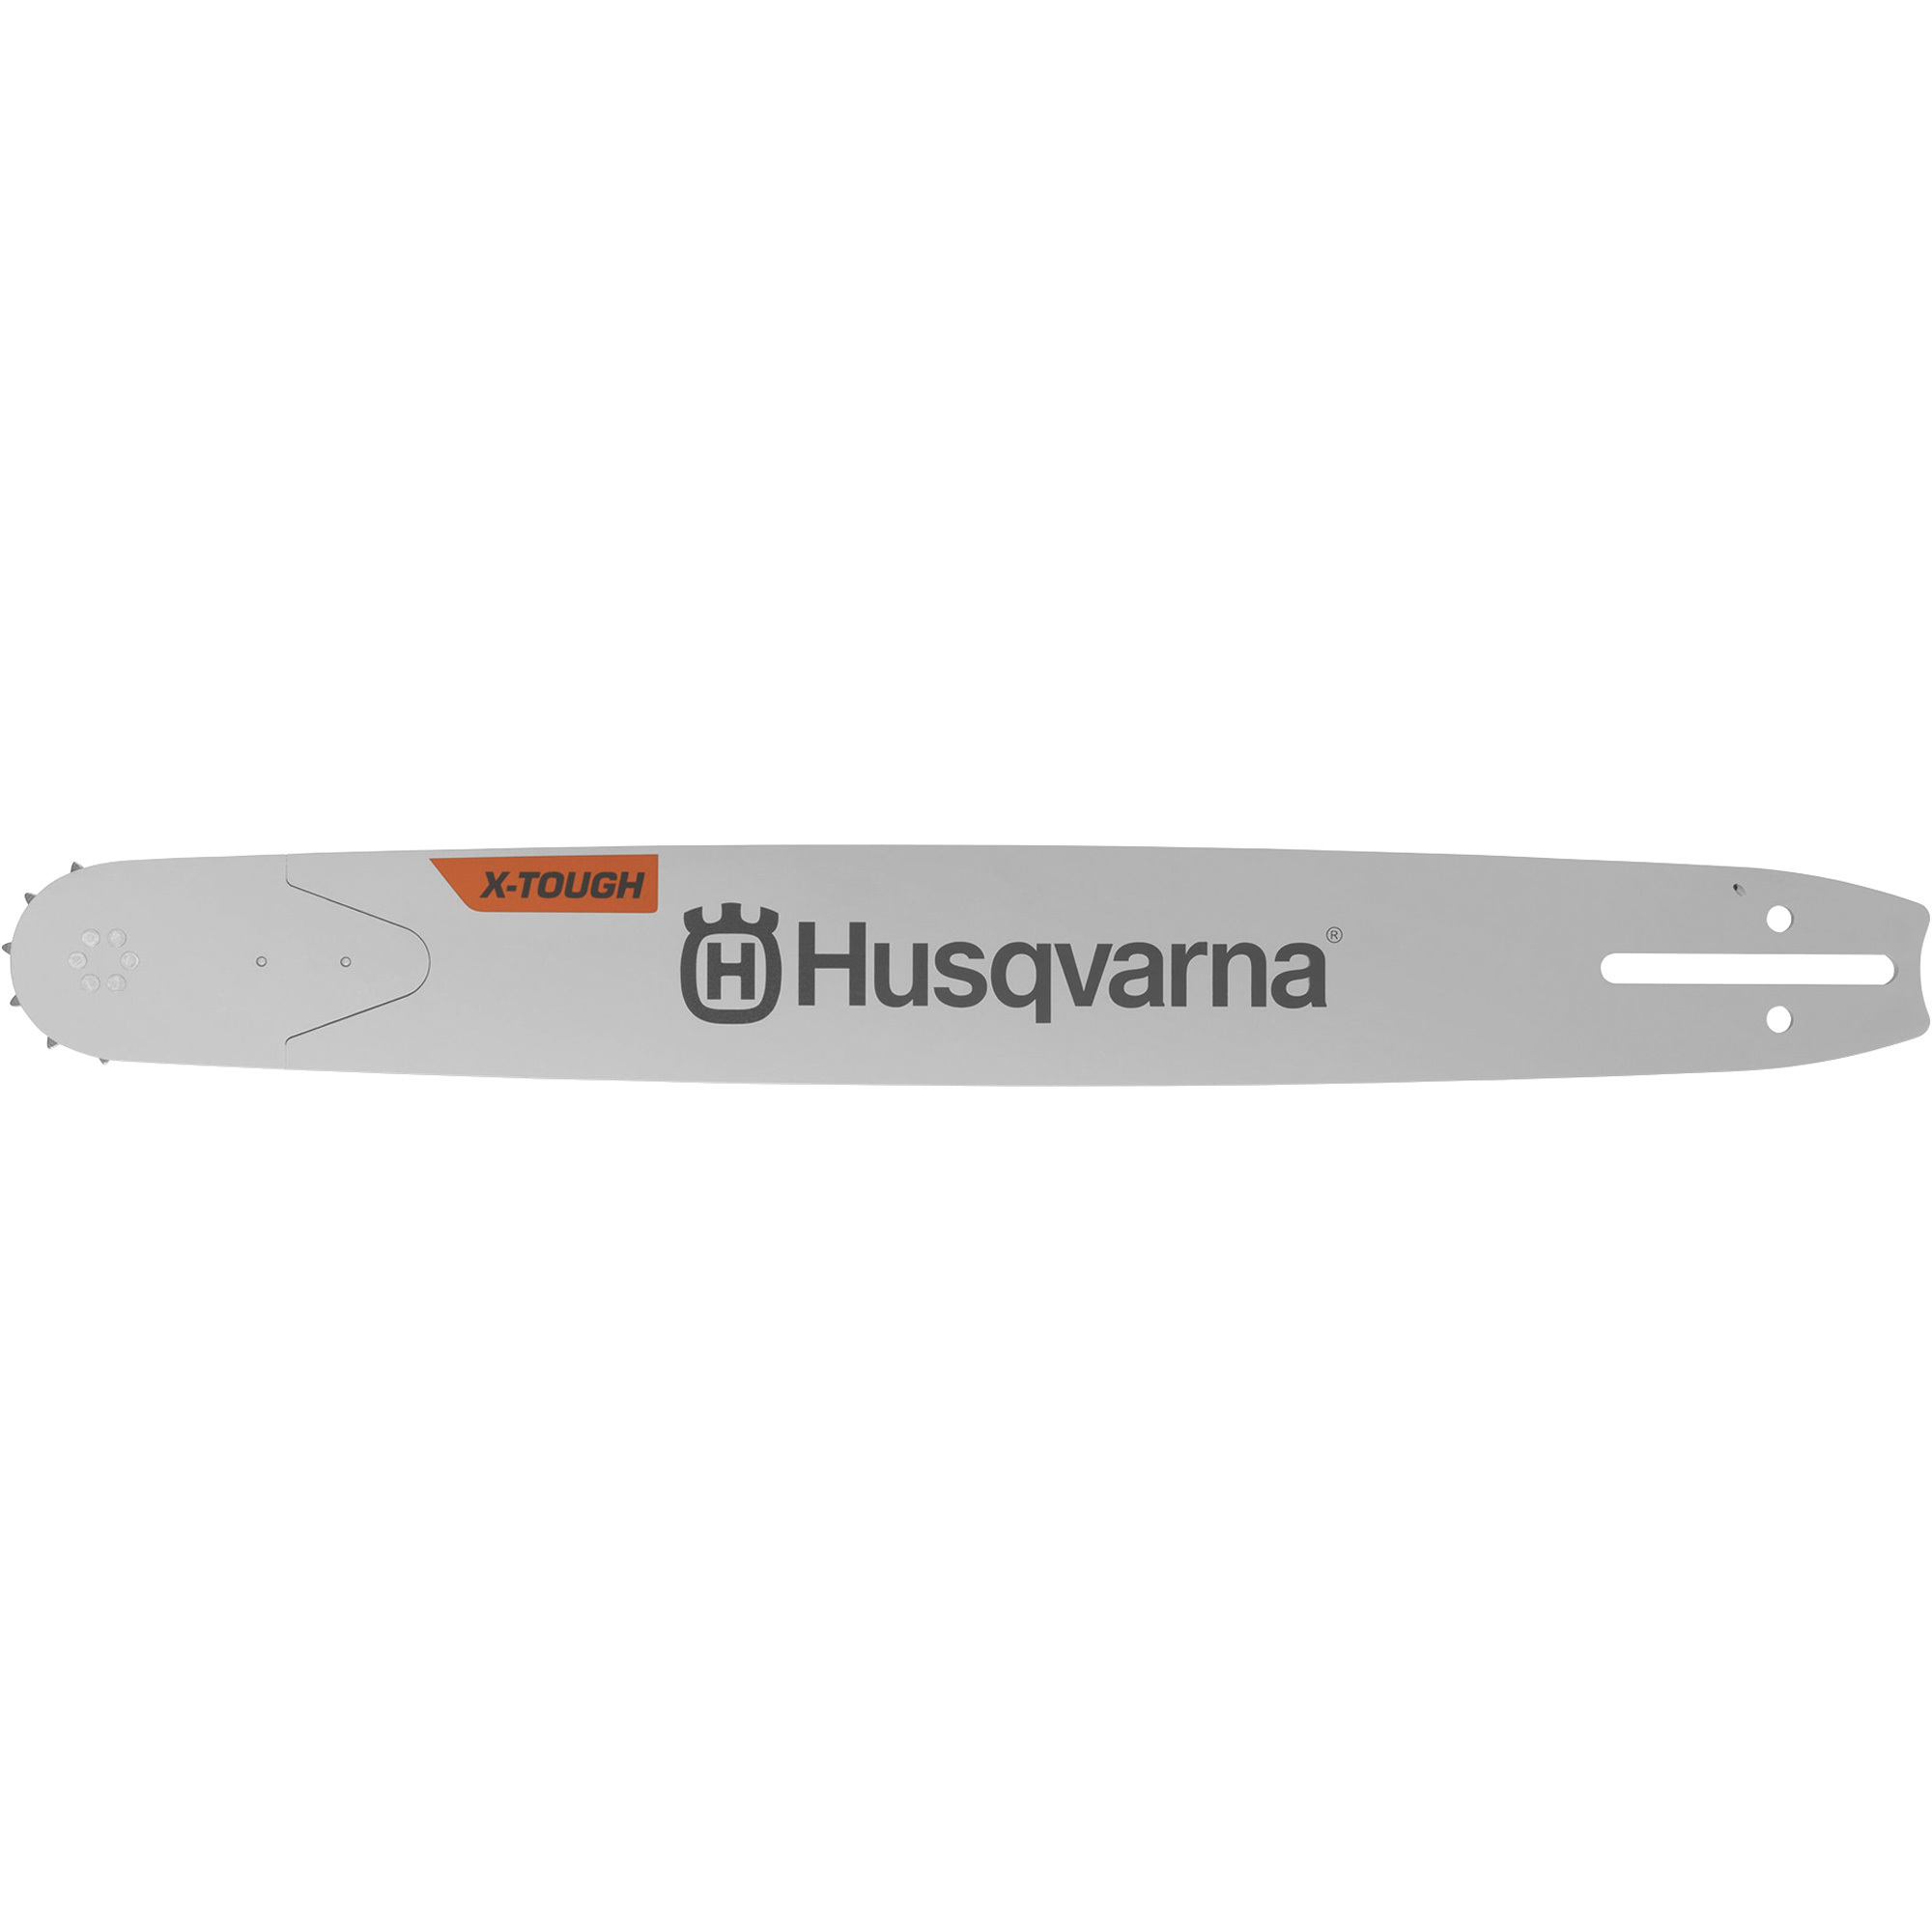 Husqvarna X-Tough RSN Chainsaw Guide Bar, 20Inch Bar Length, Model XTR380-72